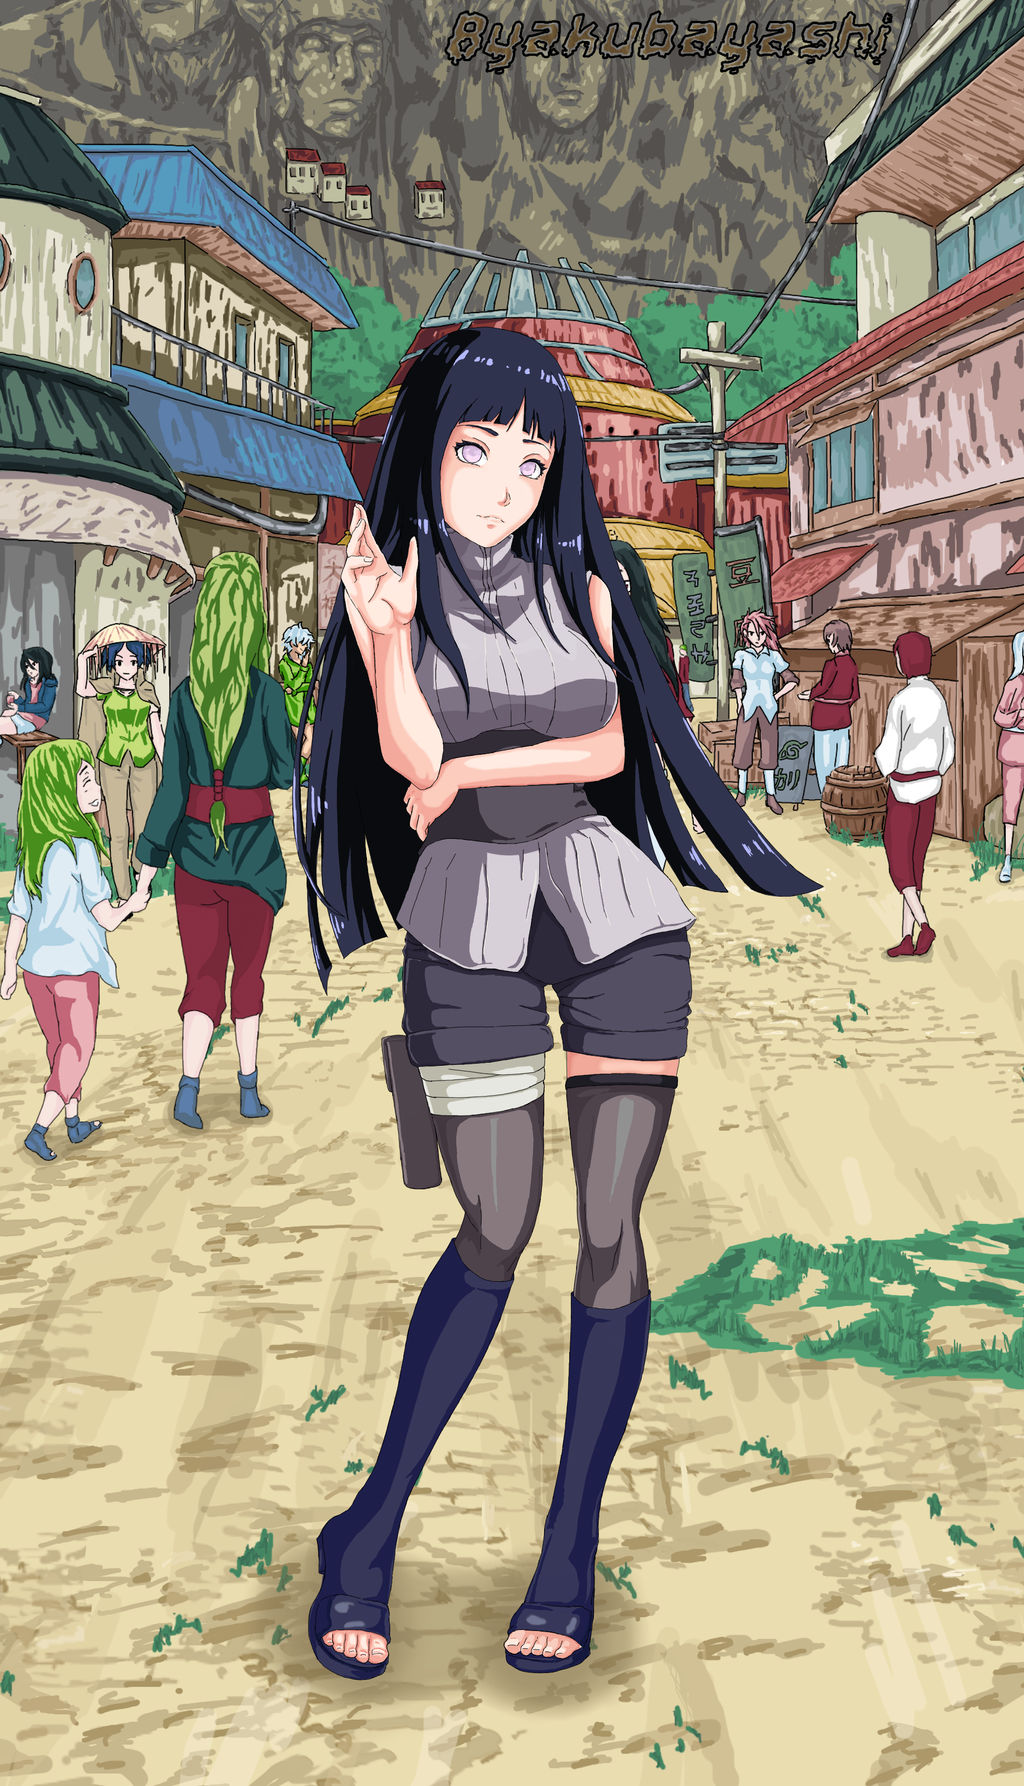 Naruto and Hinata Karce (カルセ) - Illustrations ART street